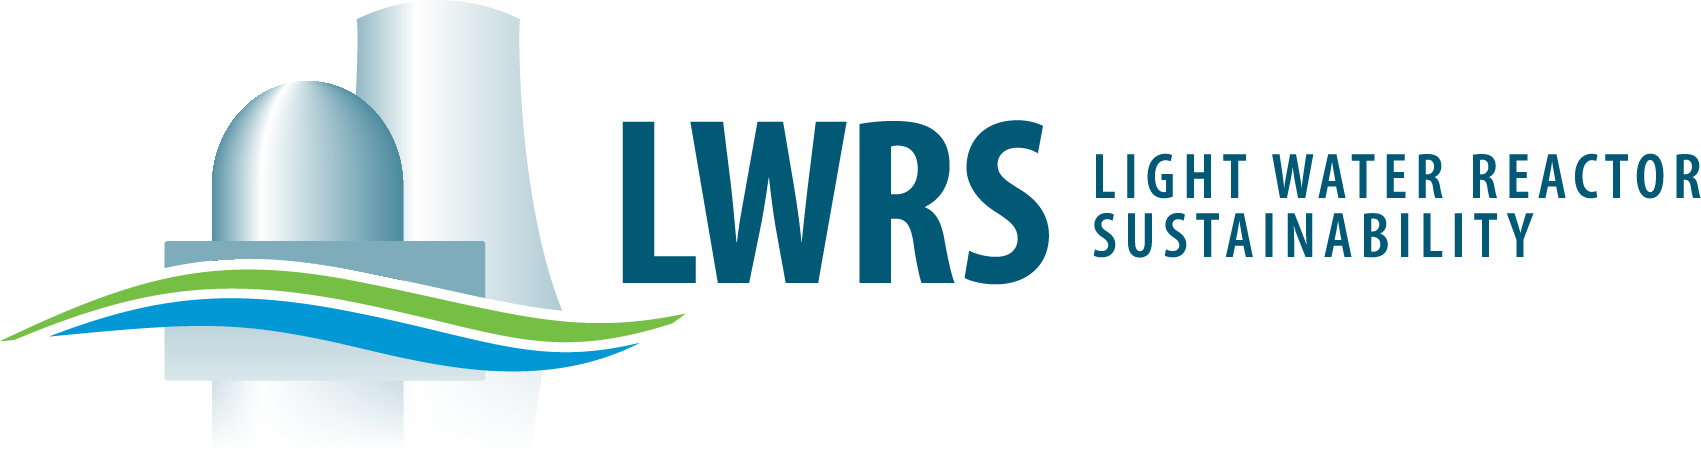 LWRS - US DOE